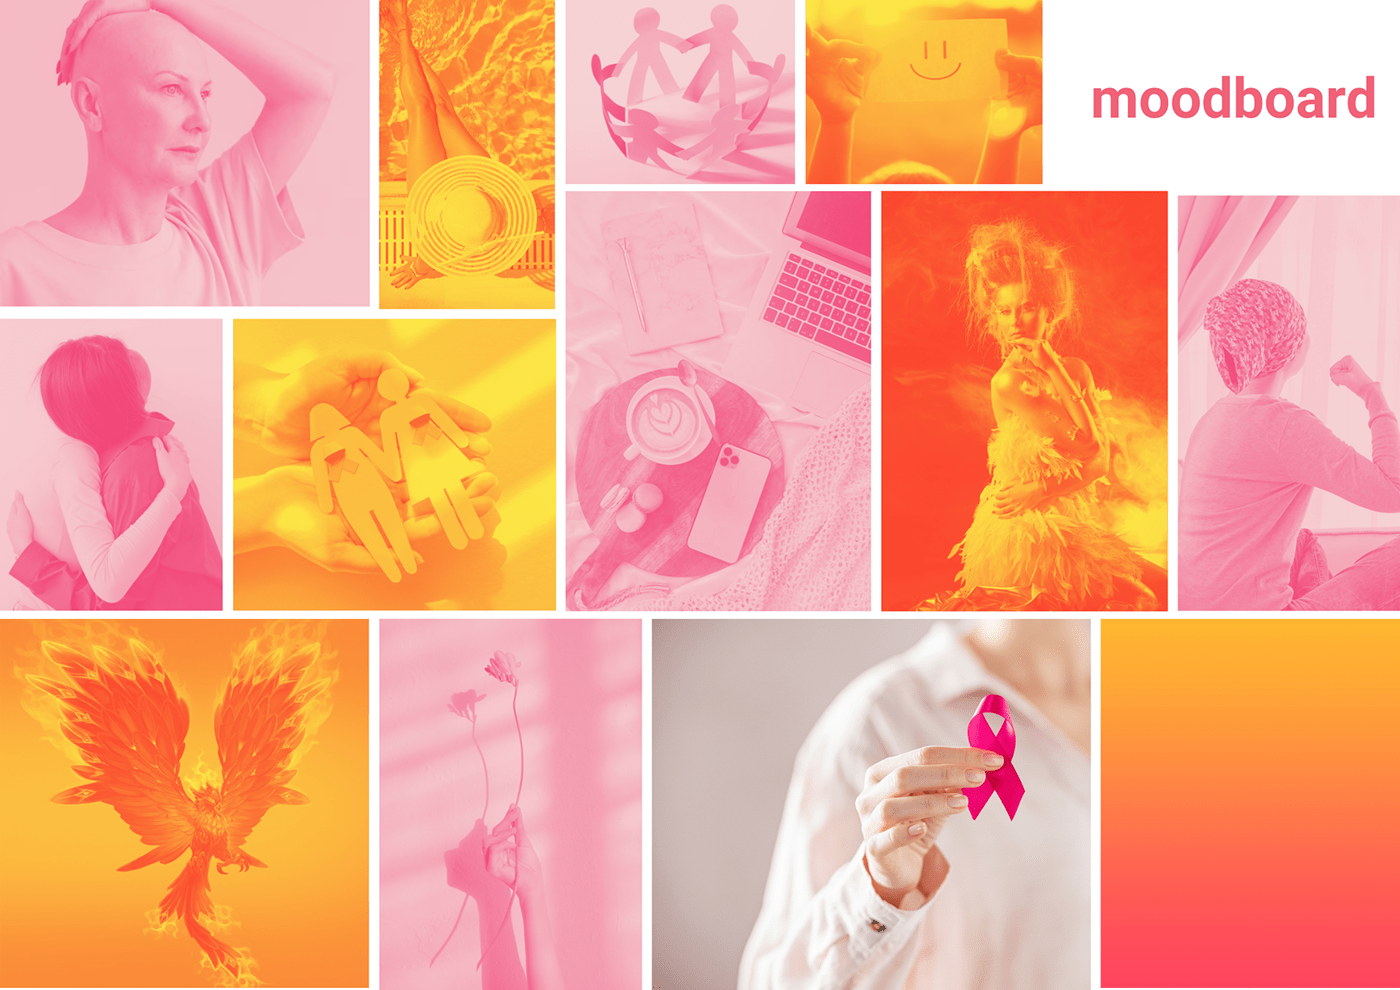 Oncologia cancer de mama mulheres logo Logotipo design identidade visual app cancer fenix